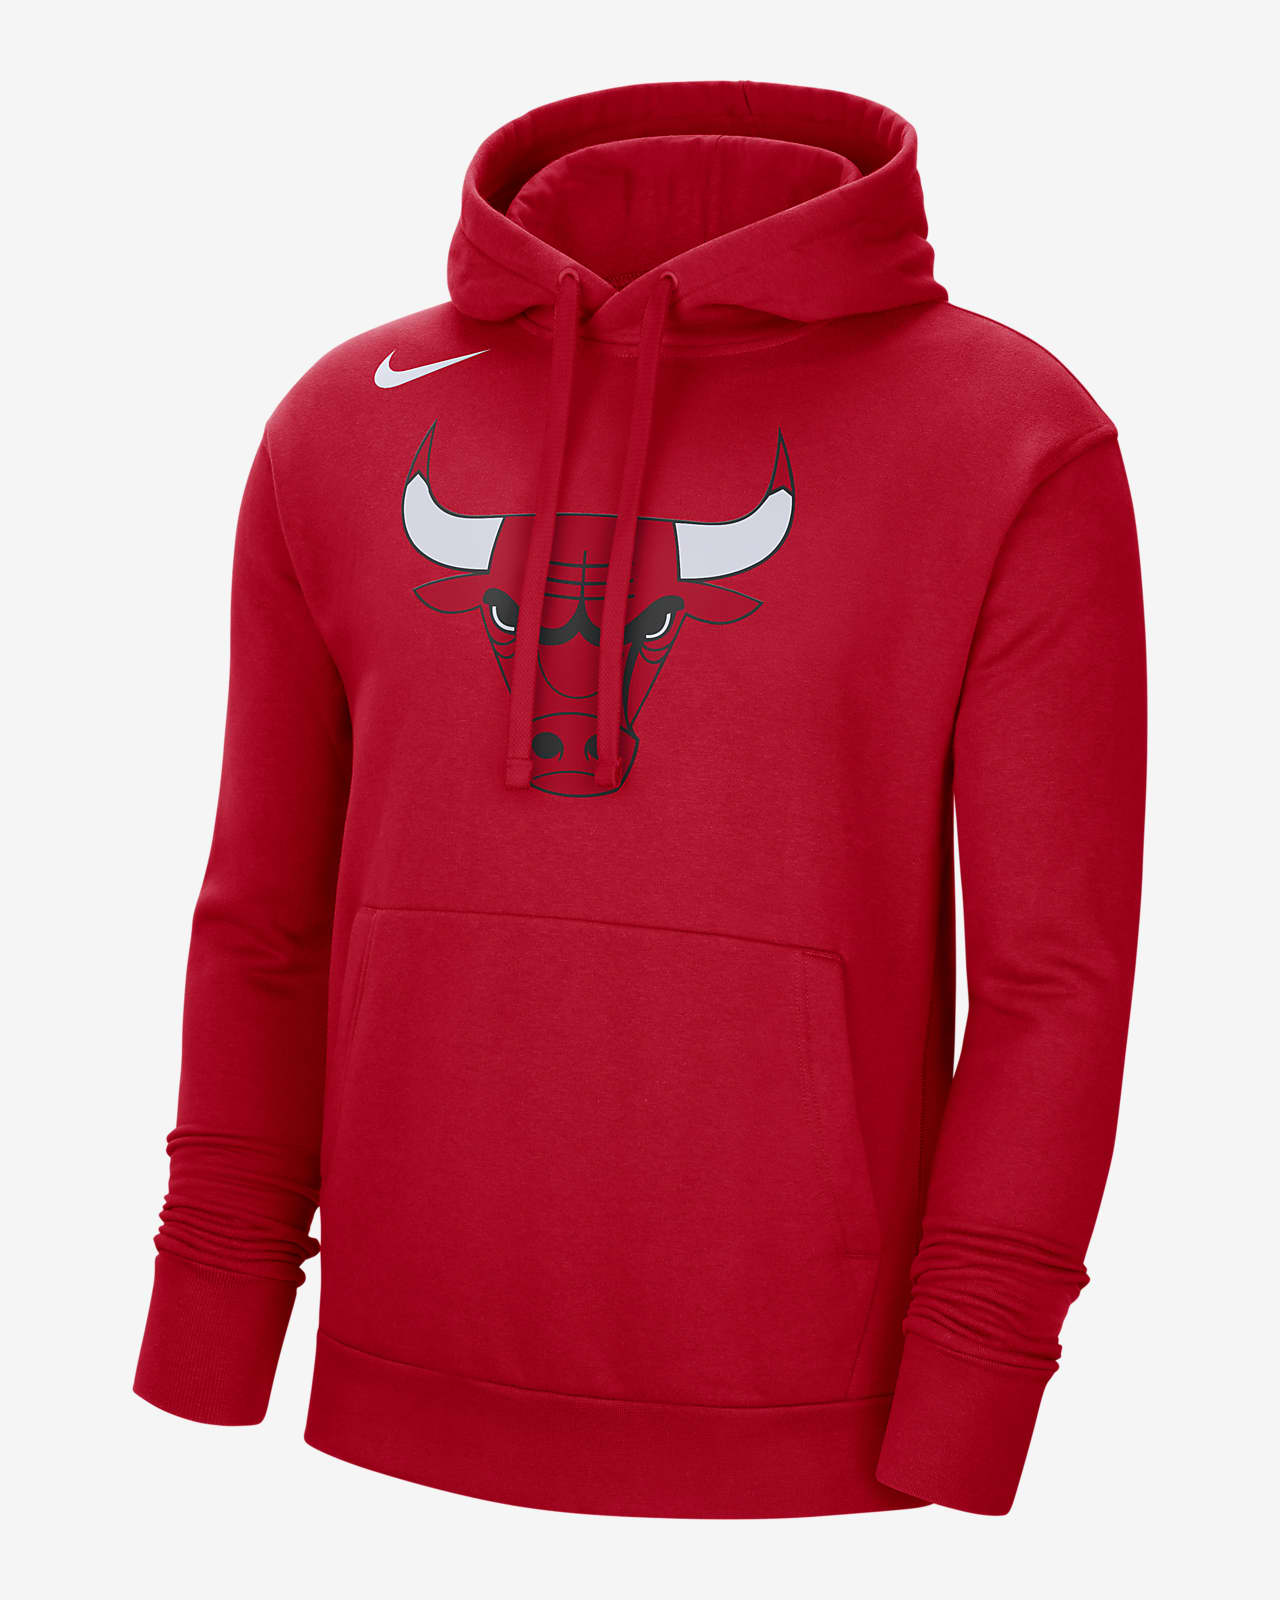 Chicago Bulls Men's Nike NBA Fleece Pullover Hoodie